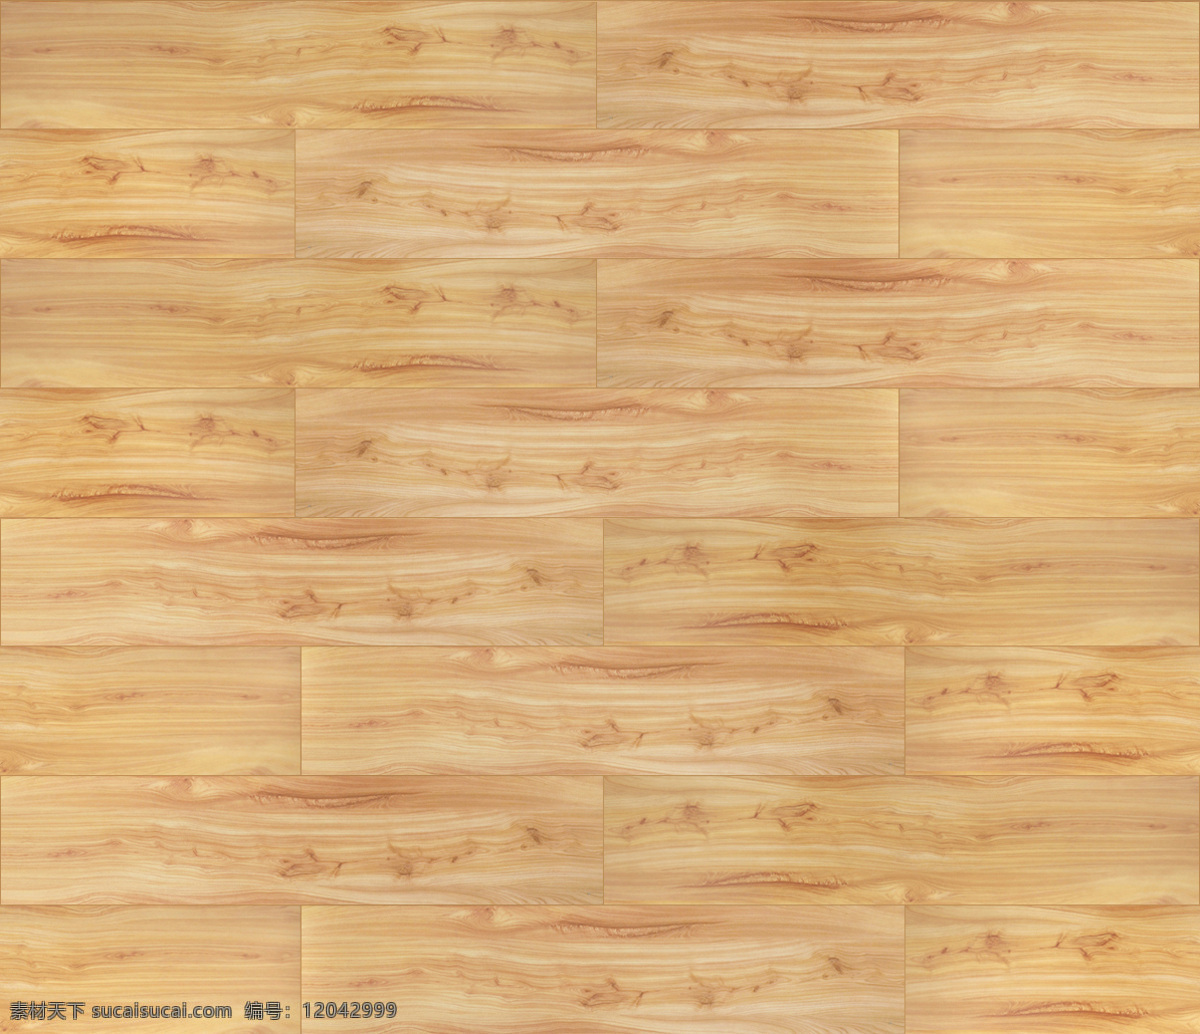 高清 原木 地板 贴图 原木木纹 实木 复合 木地板 木色 木纹理背景 木纹理贴图 原木花色 木纹理图片